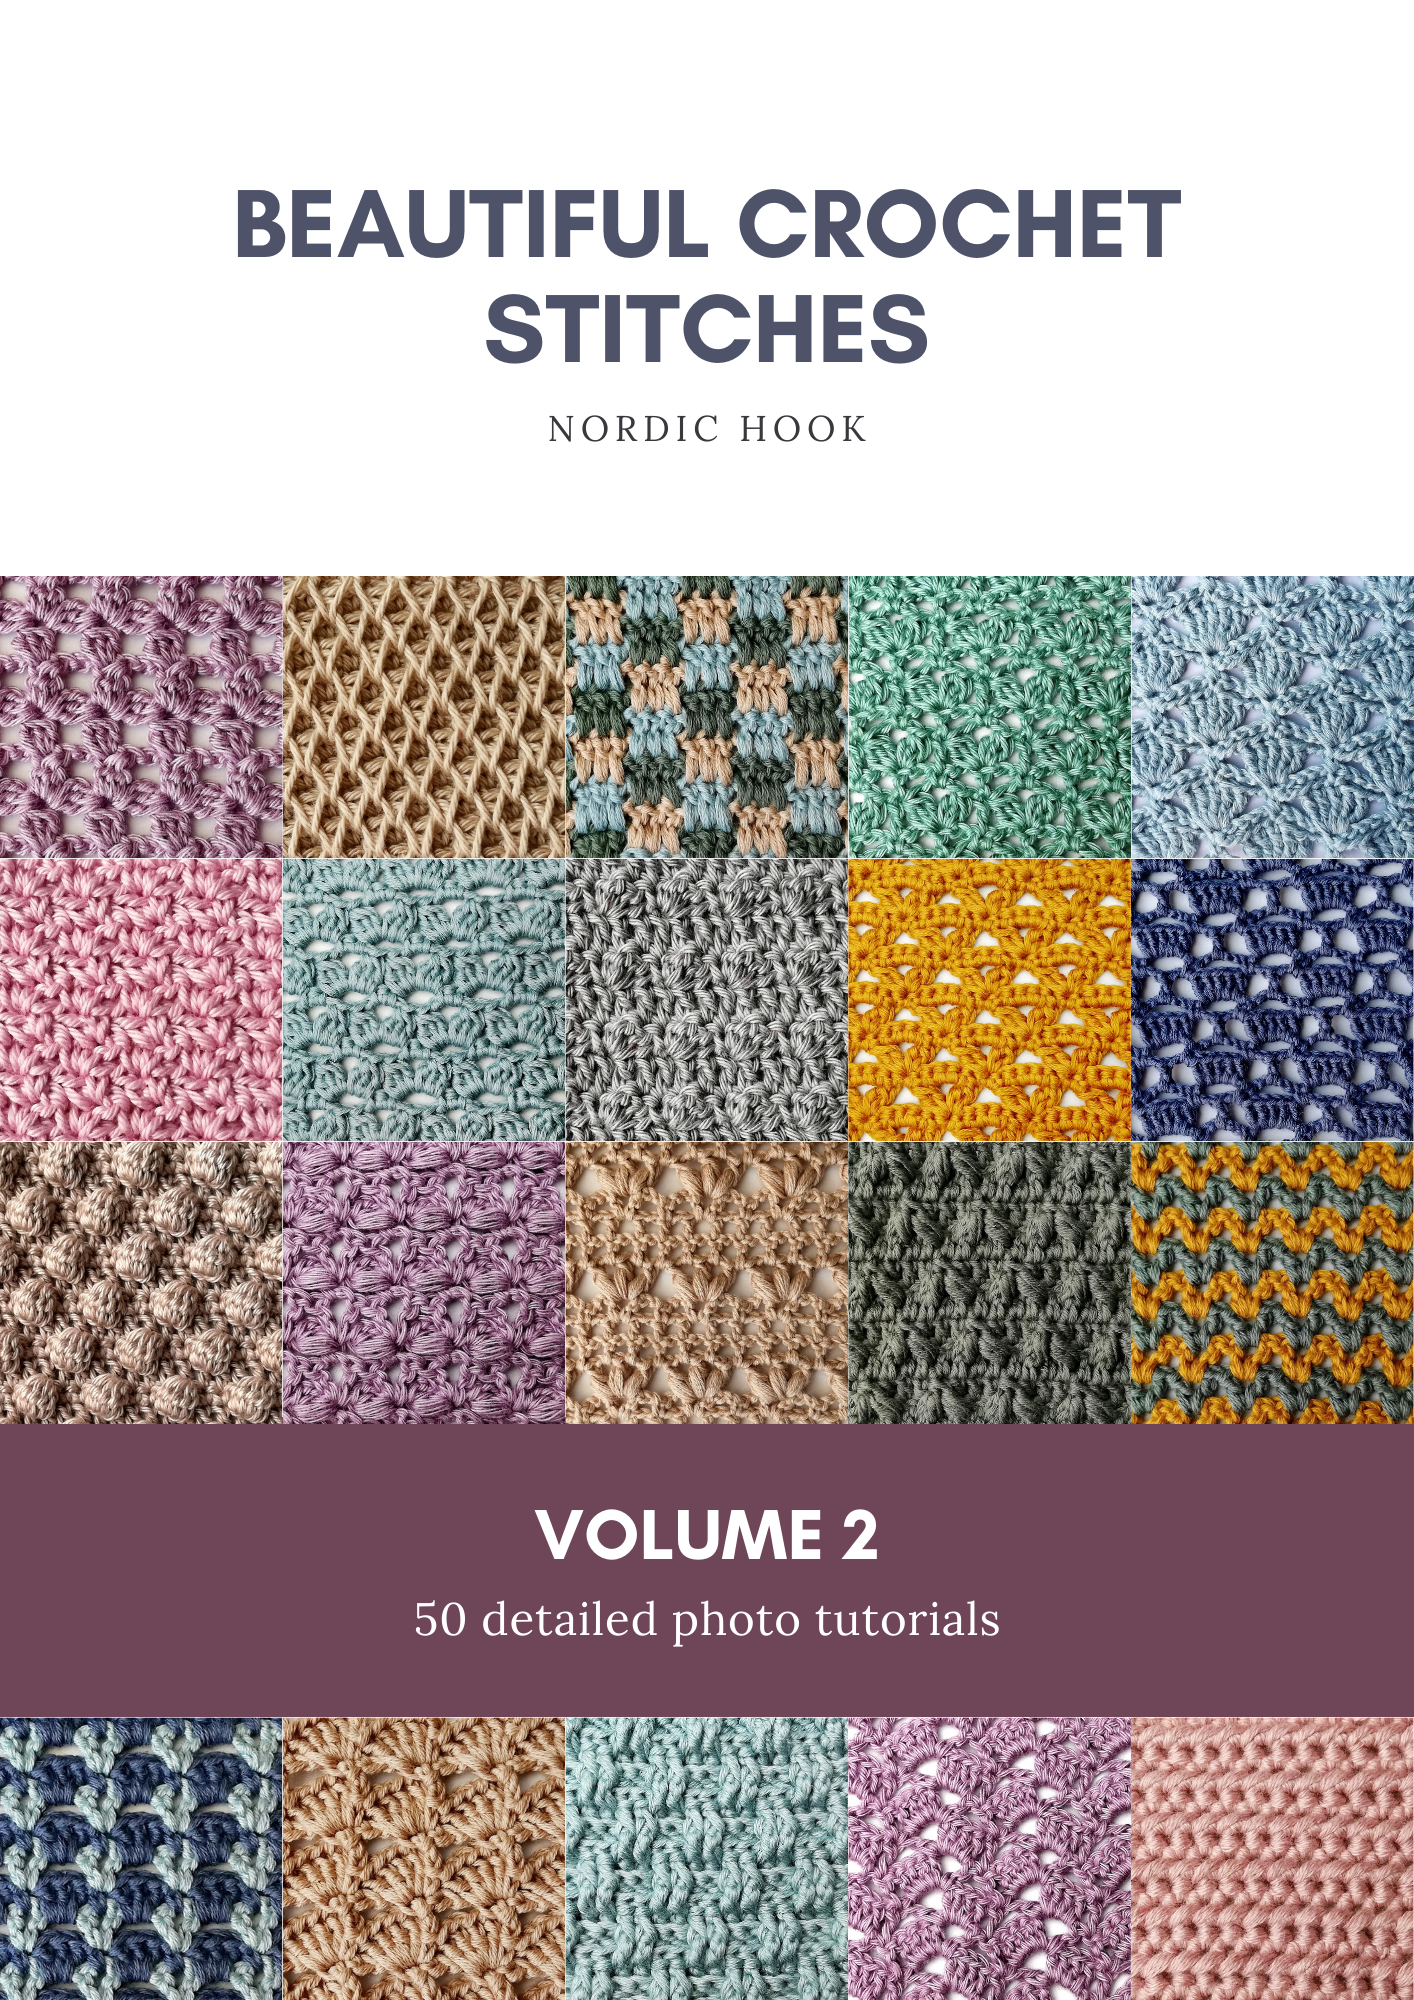 Beautiful crochet stitches Volume 2